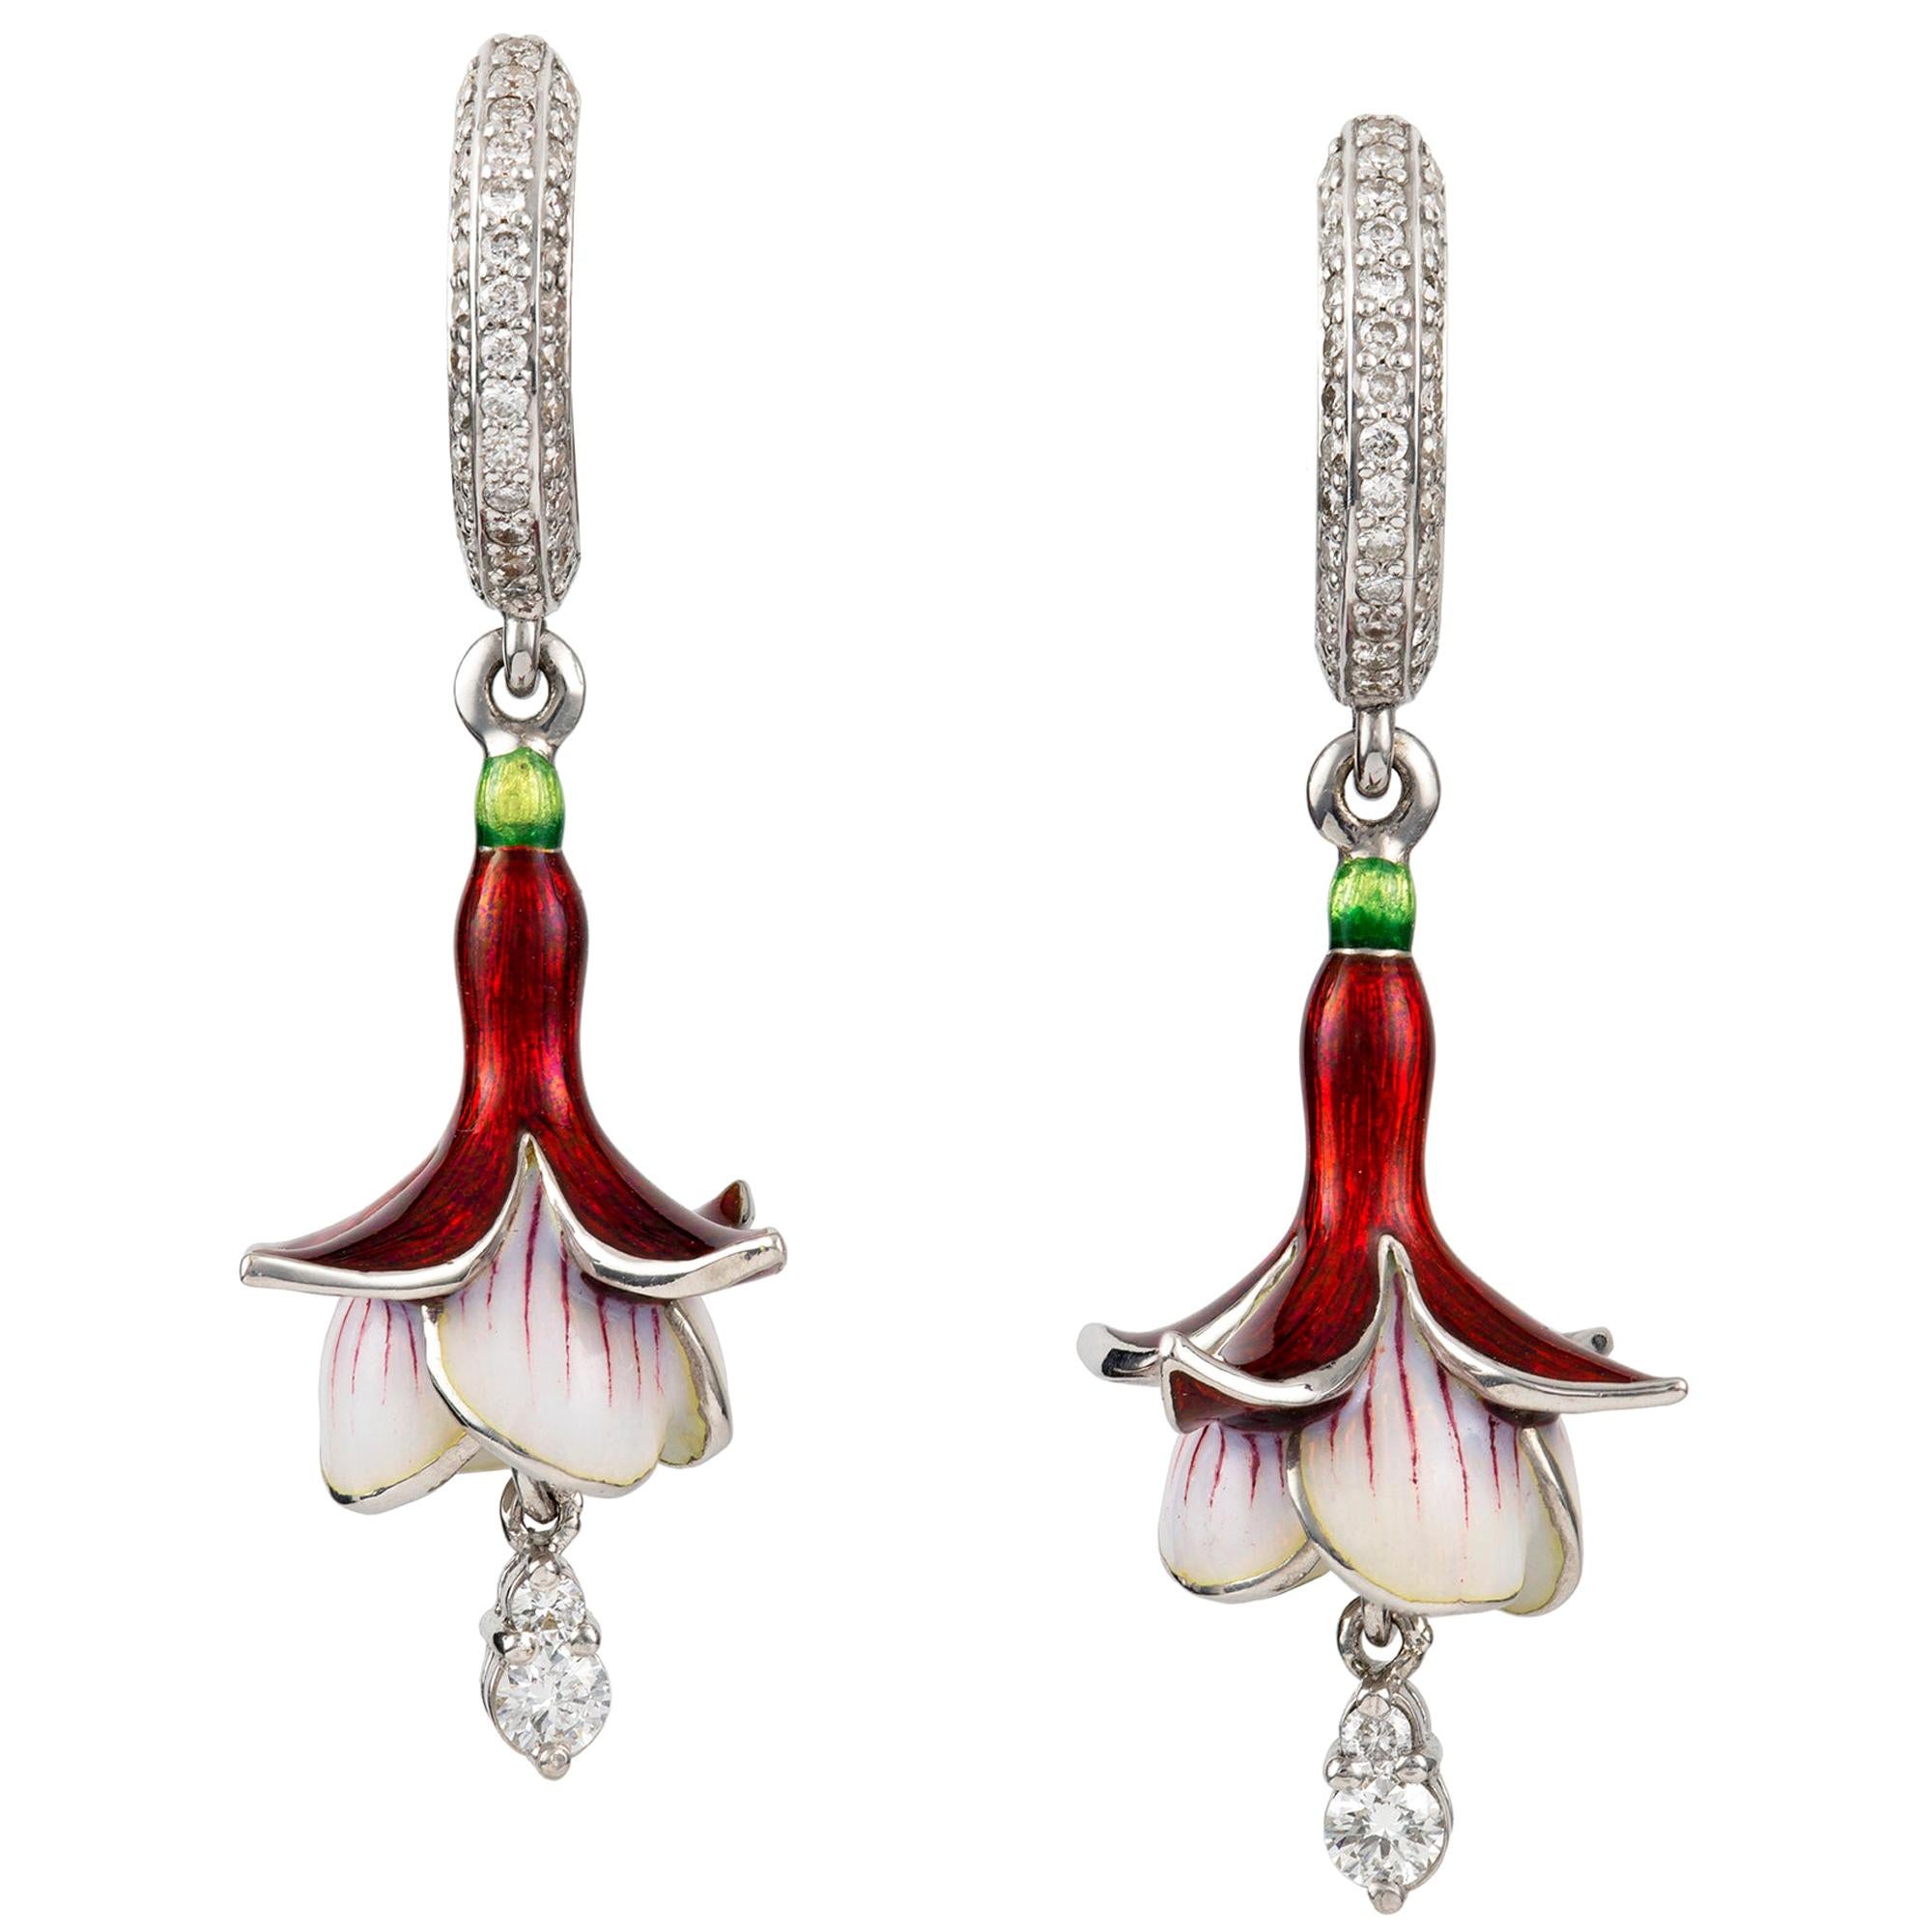 Pair of Fuchsia Earrings by Ilgiz F For Sale